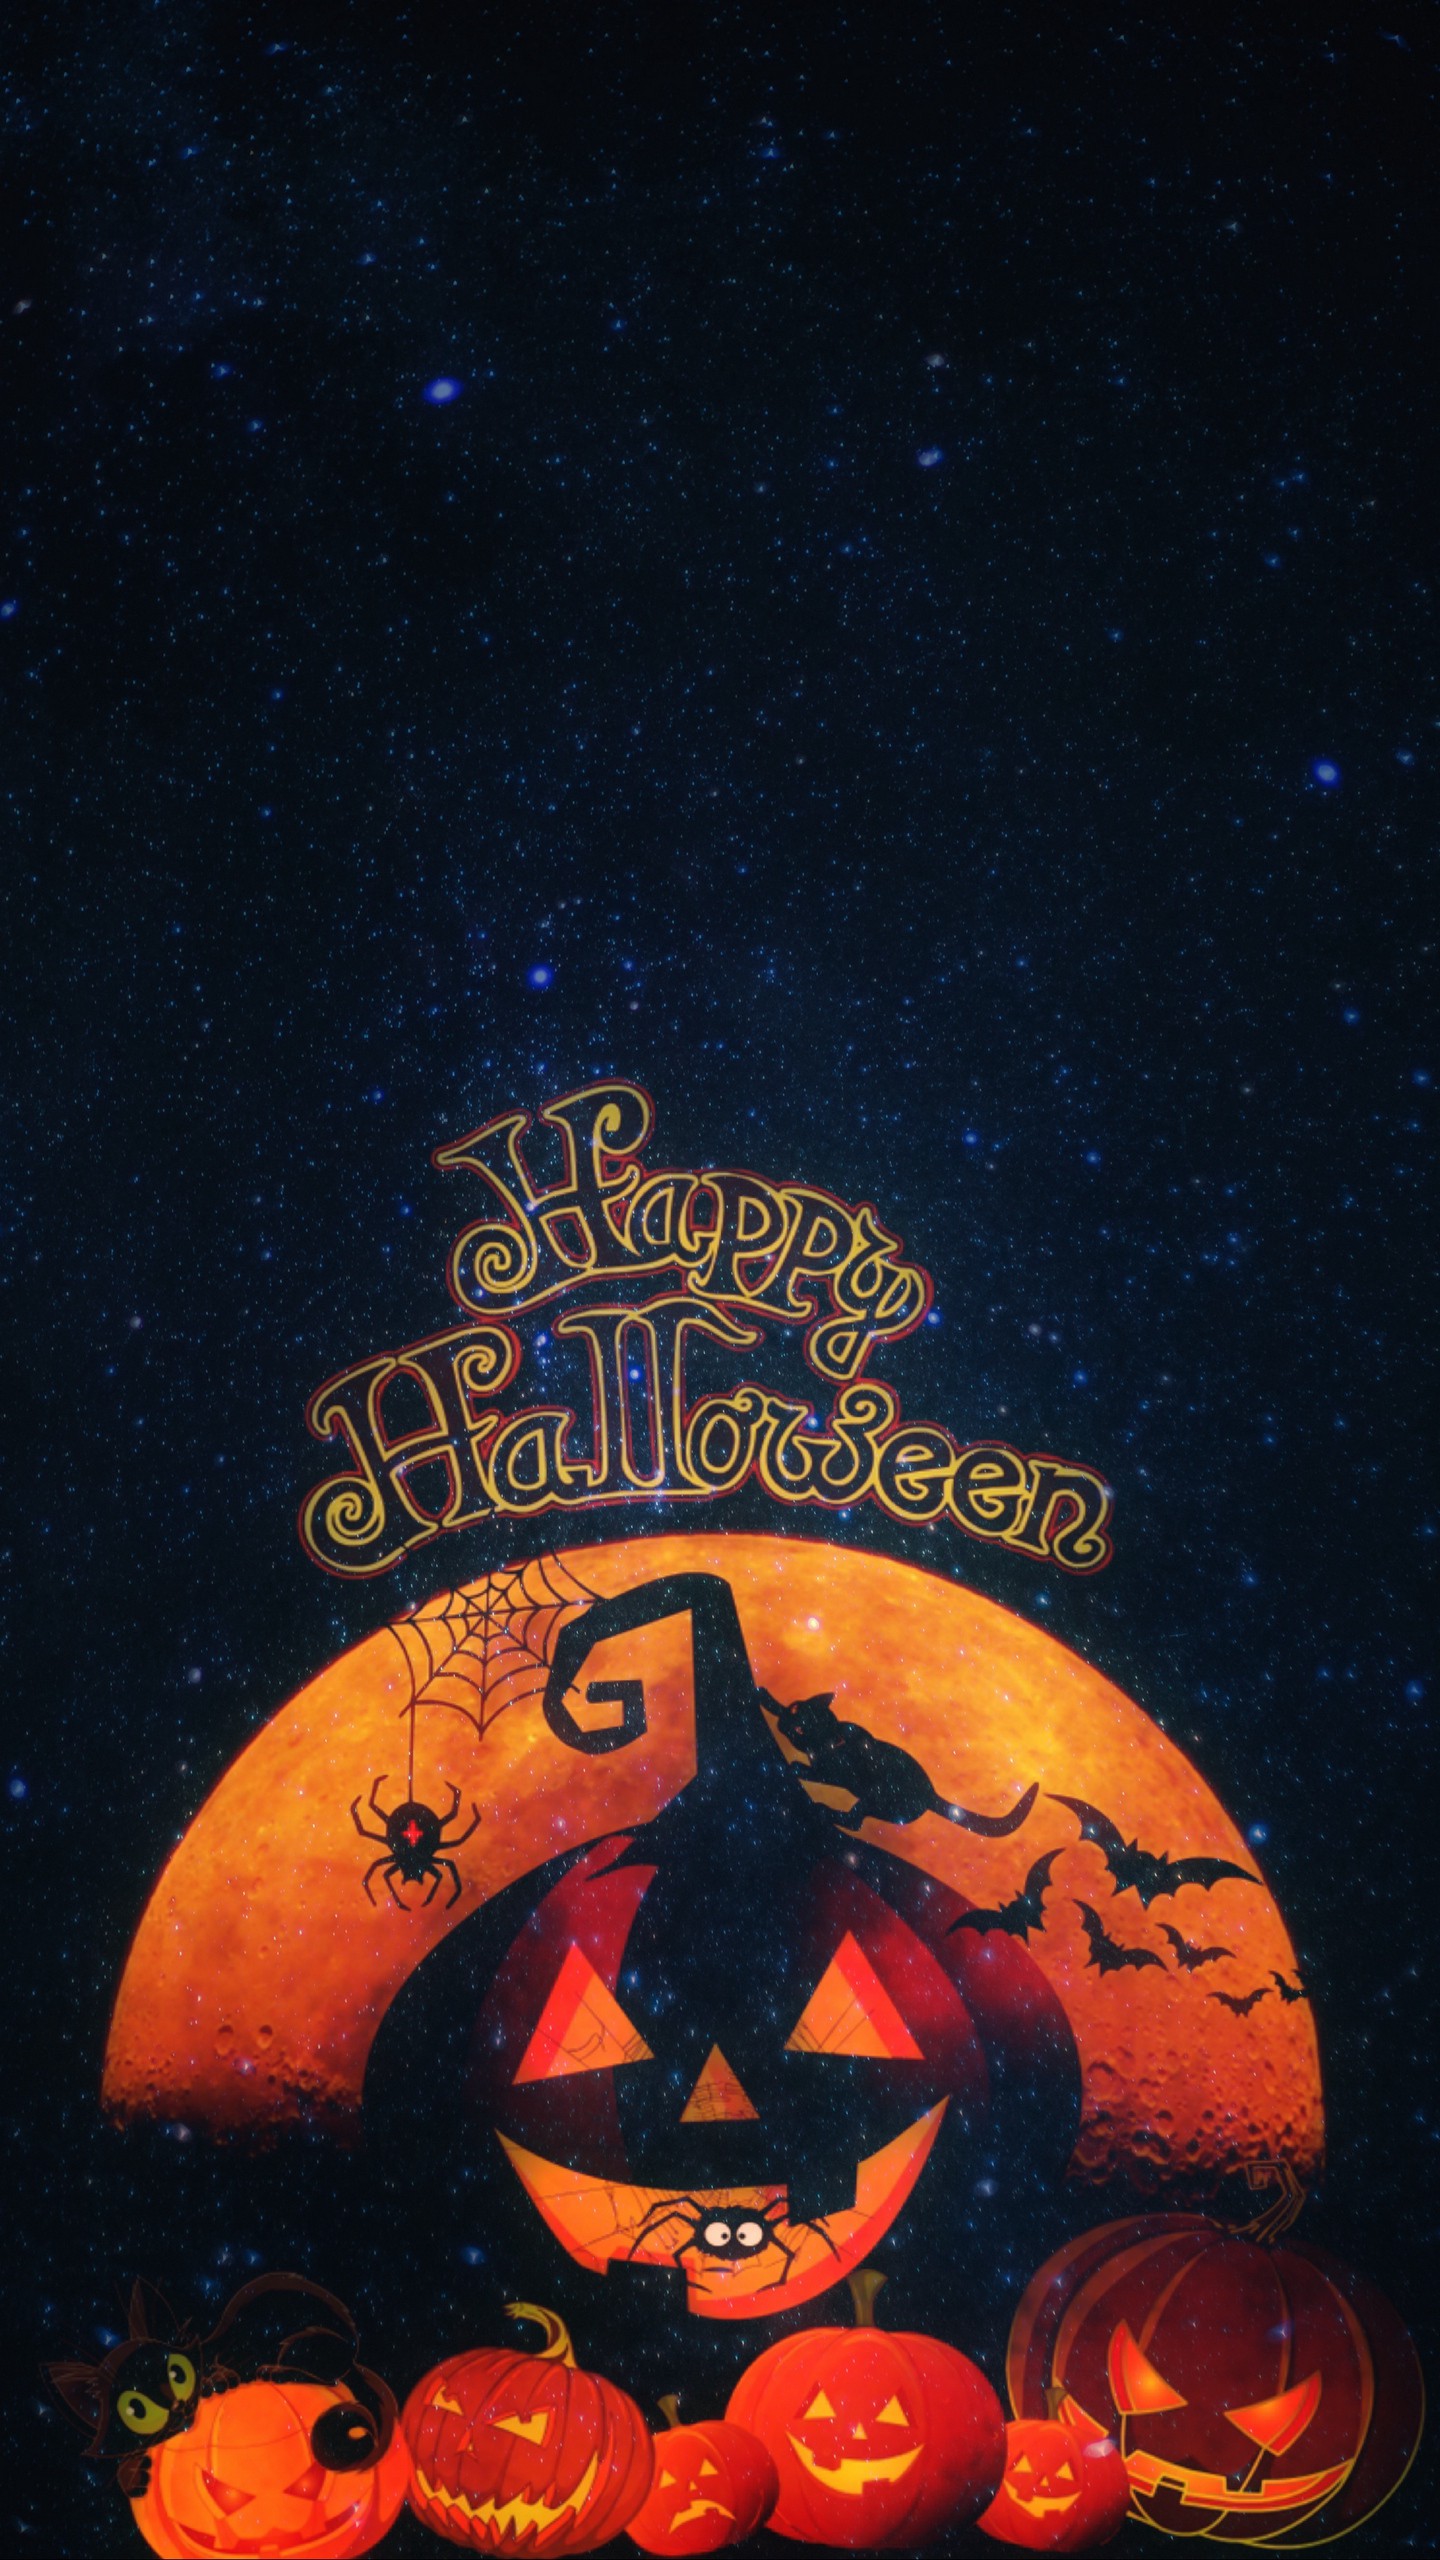 Обои на телефон хэллоуин, тыквы, осень, кот, праздник - скачать бесплатно в  высоком качестве из категории Праздники